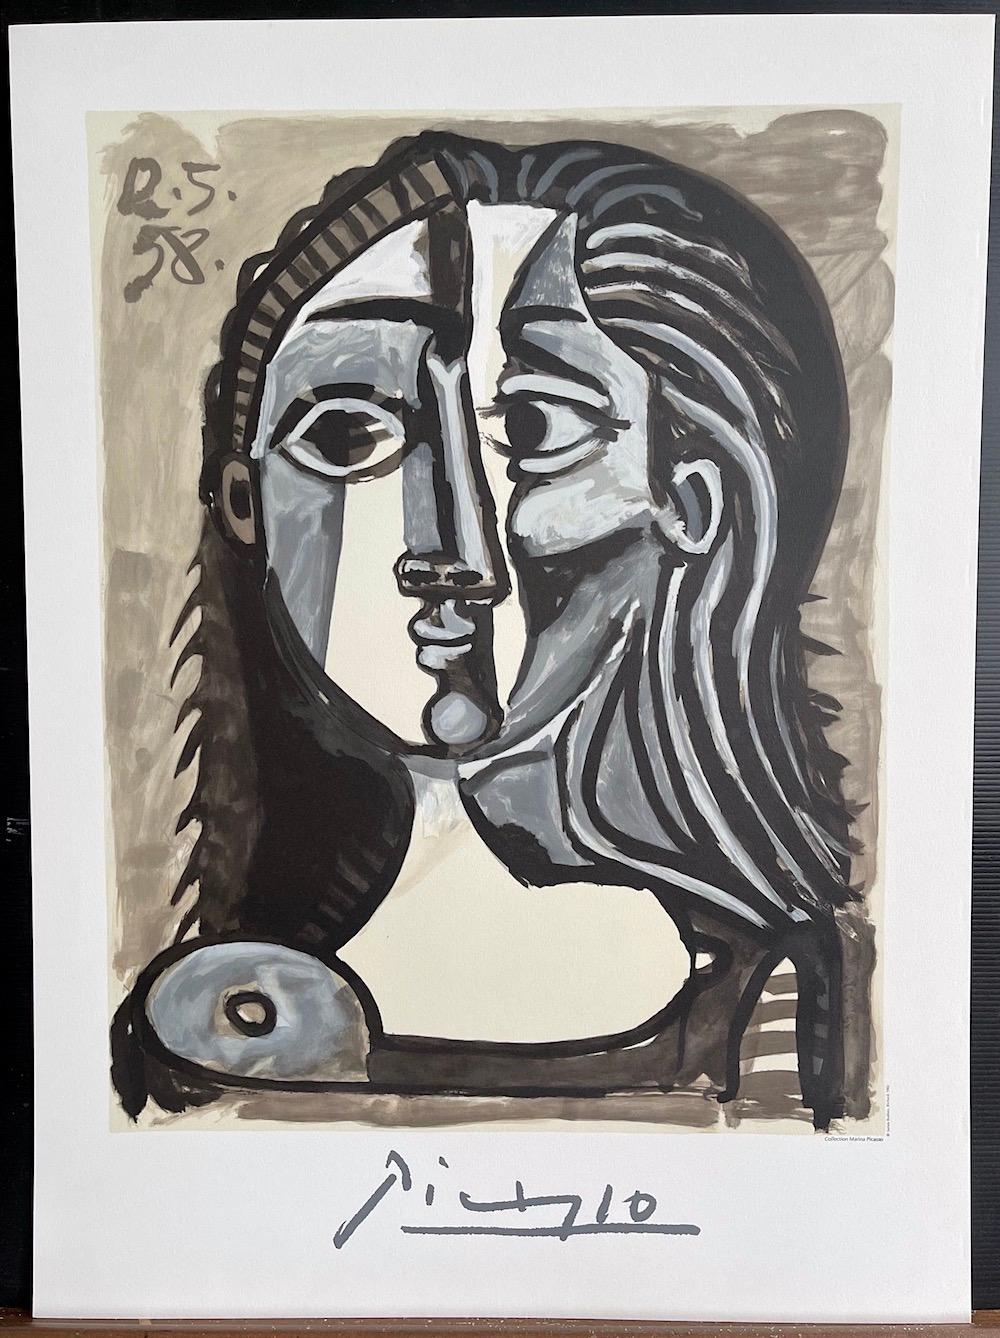 Künstler: Pablo Picasso, Nach, Spanier (1881 - 1973)
Titel: Tete de Femme 
Jahr des Original-Kunstwerks: 1958
Medium: Lithographie auf Coventry-Papier, 100% säurefrei
Auflage von 1000, nicht nummeriert, nachlassgeprüfte gedruckte